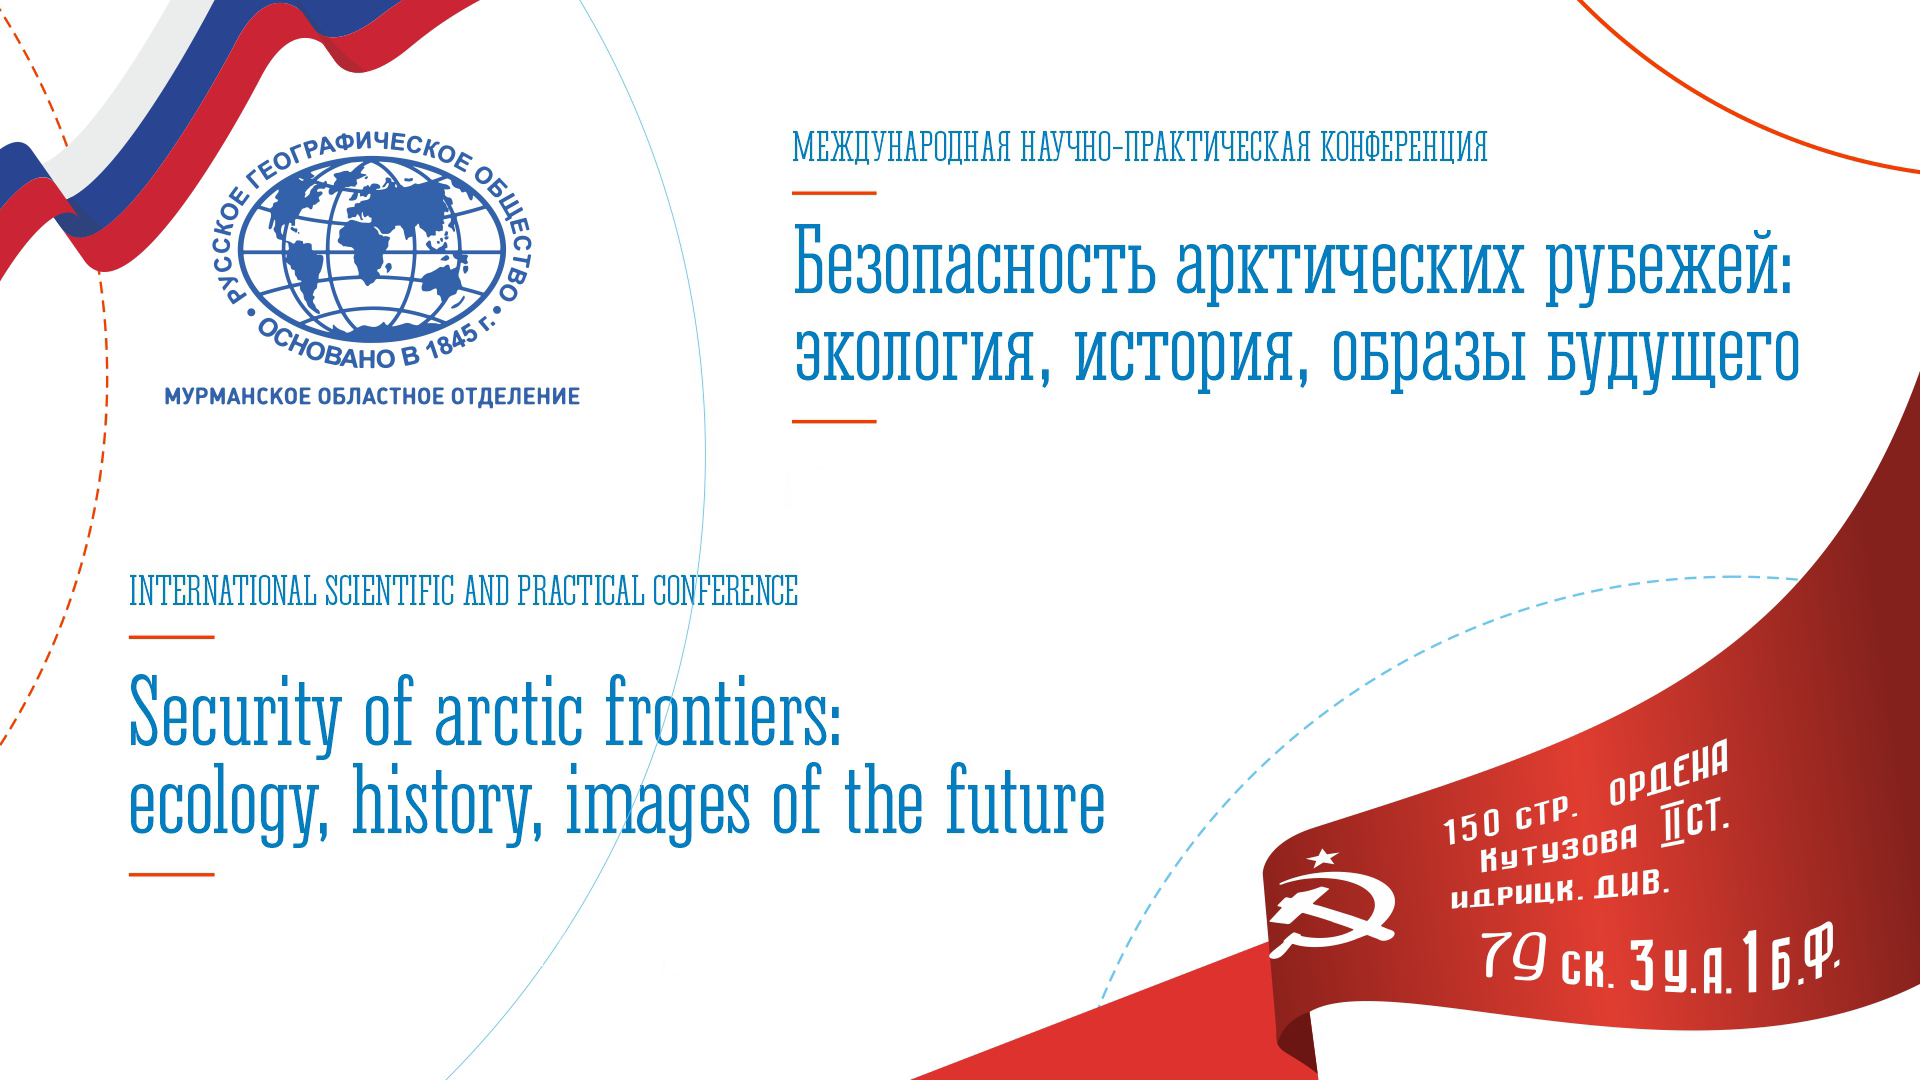 Трест на конференции «Безопасность арктических рубежей: экология, история, образы будущего»